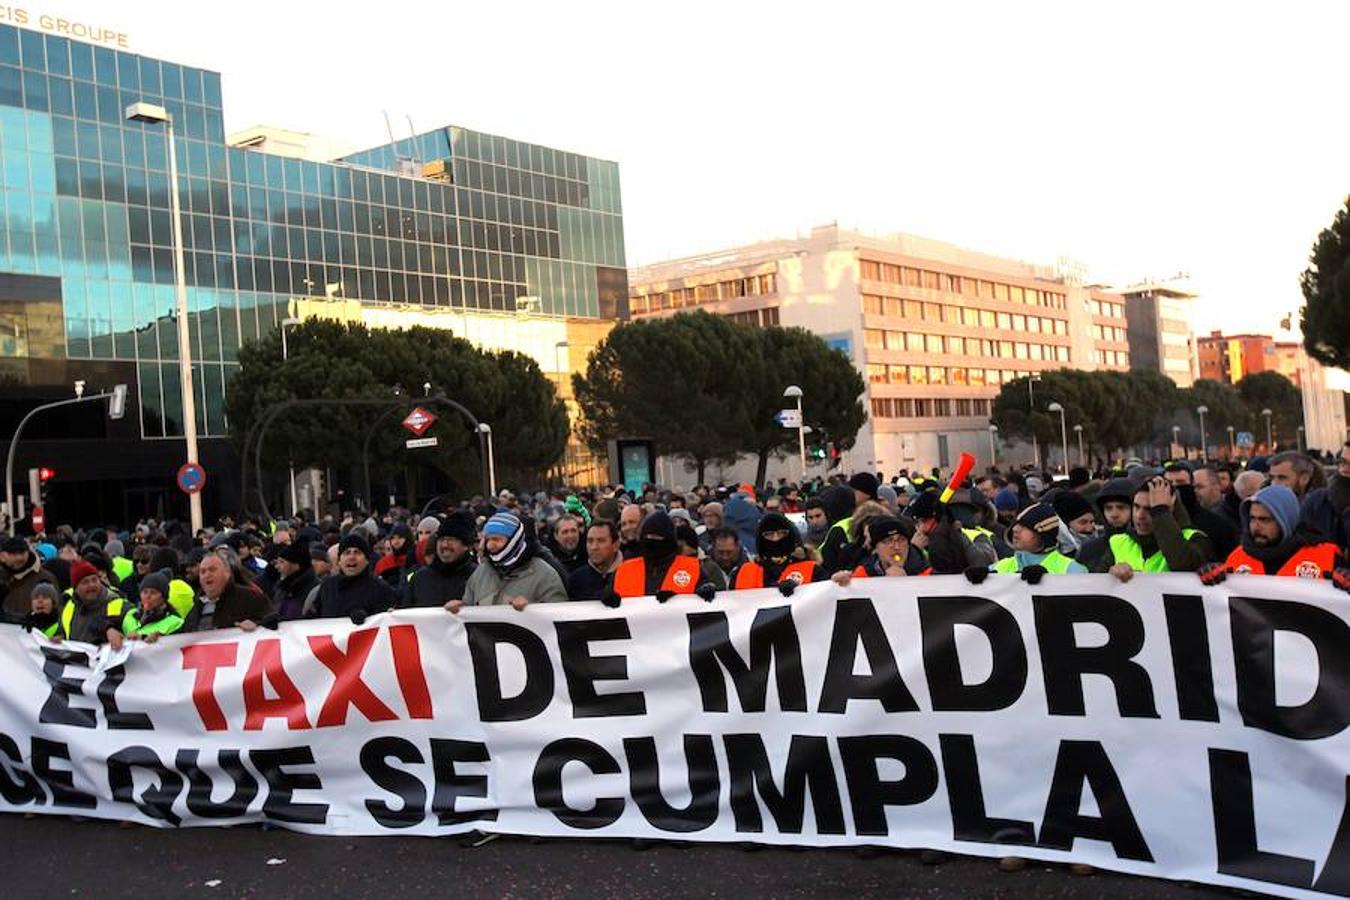 Madrid afronta este miércoles la tercera jornada de la huelga indefinida convocada por los taxistas de la región. La mayor concentración tiene lugar en las inmediaciones del recinto ferial de Ifema, donde se inaugura Fitur, la feria más importante de la capital a la que se prevé que asistan más de 250.000 visitantes.